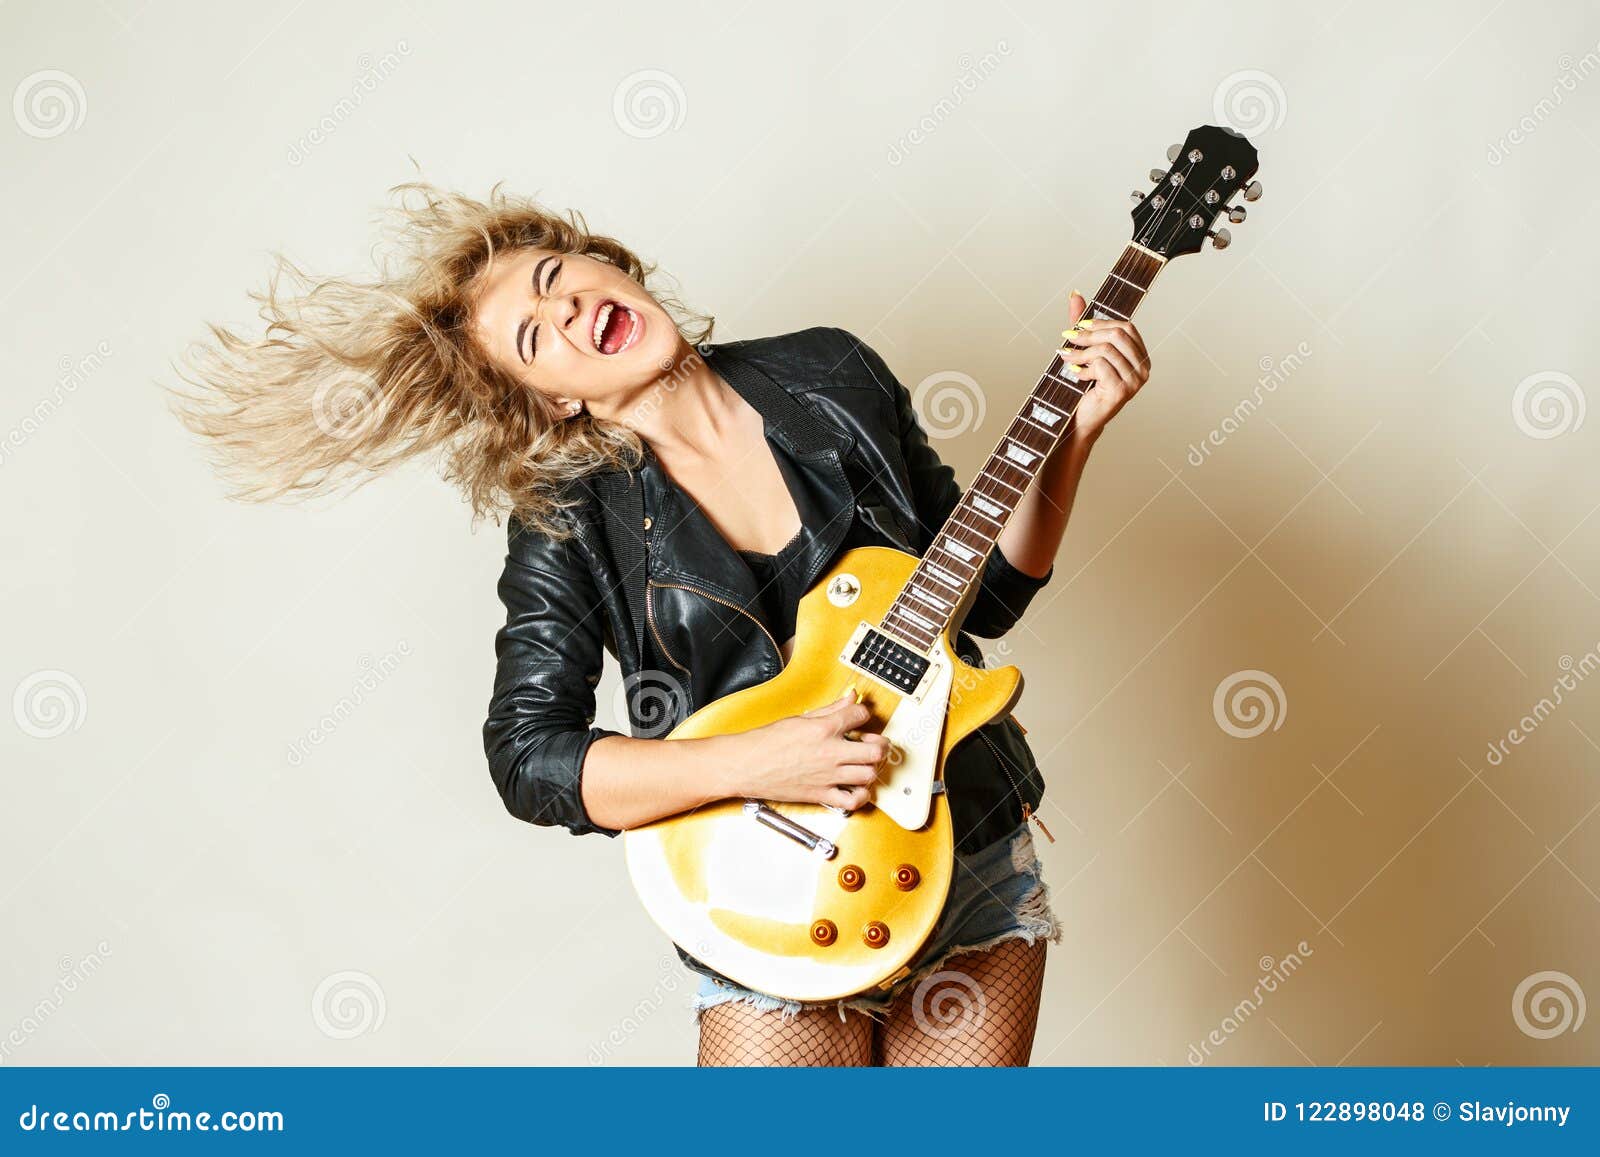 150 Beautiful Blonde Plays Guitar Stock Photos - Free & Royalty